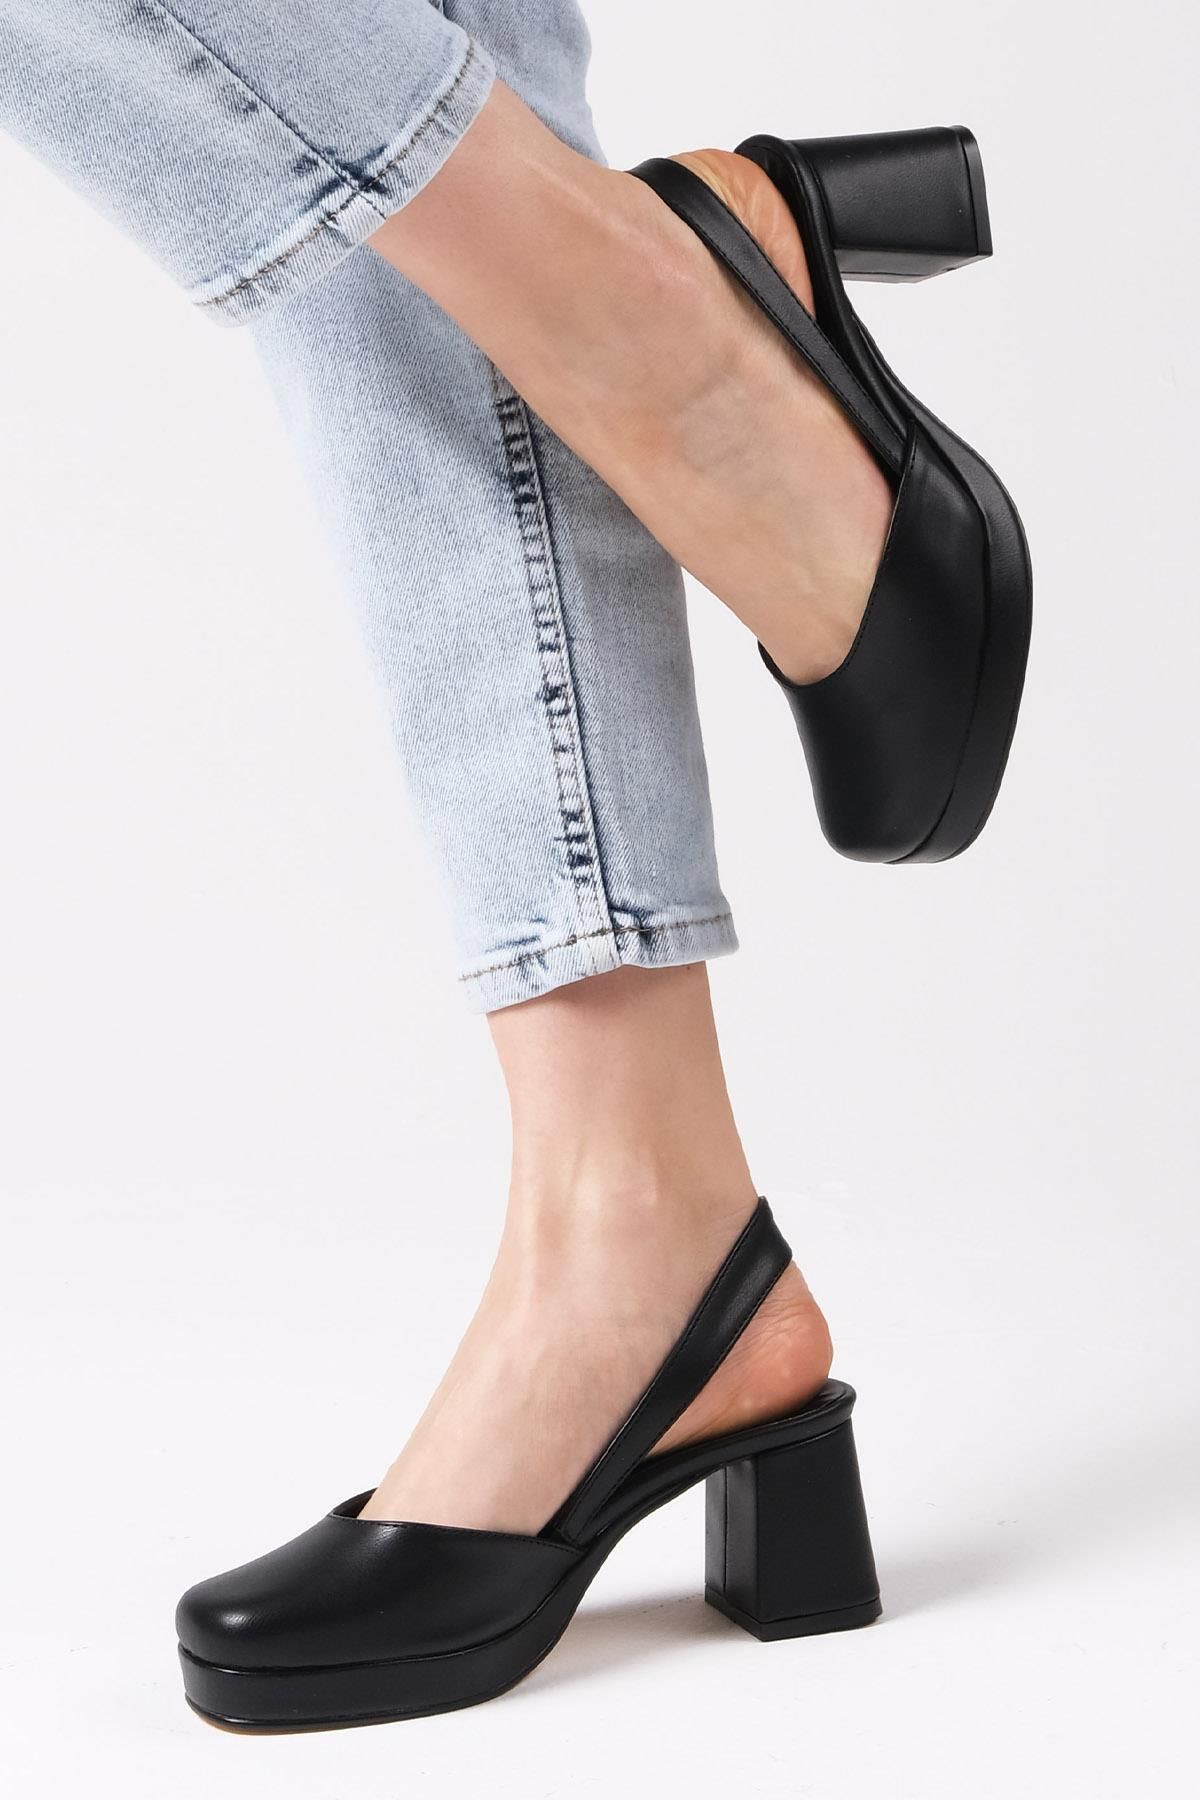 Mio Gusto Evita Siyah Renk Arkası Açık Platformlu Kadın Topuklu Ayakkabı